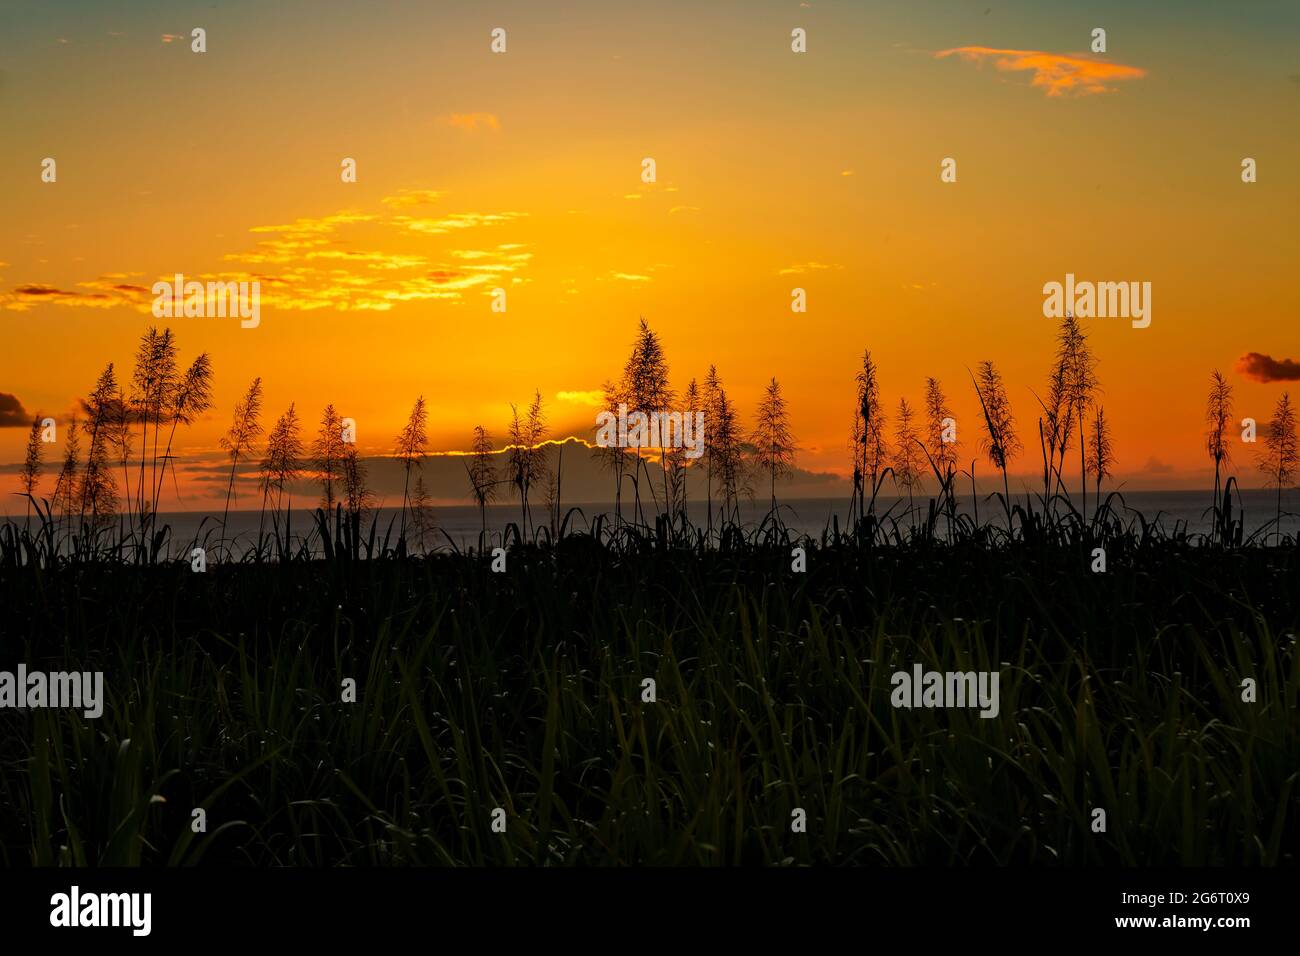 Sonnenuntergang über dem Meer mit blühenden Zuckerrohrpflanzen im Vordergrund. Stockfoto